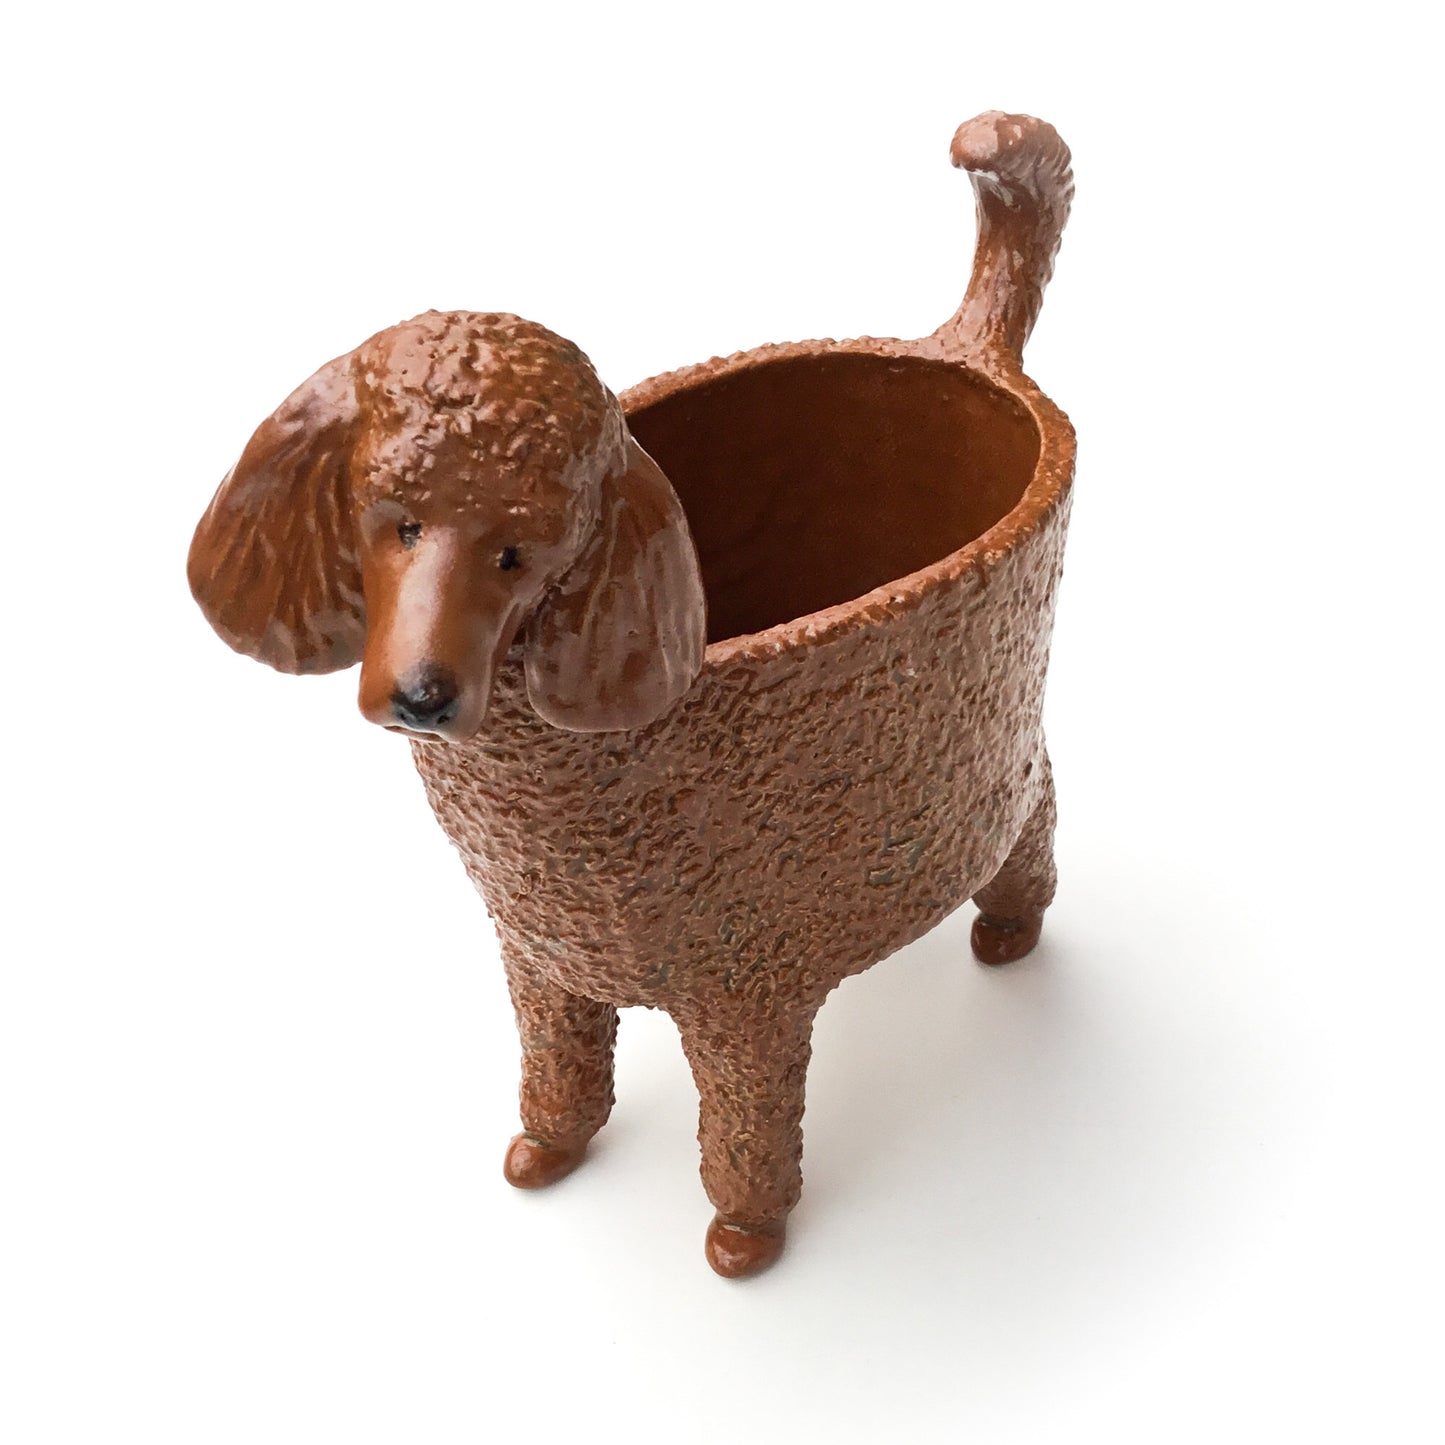 Standard Poodle Dog Planter - Ceramic Dog Plant Pot